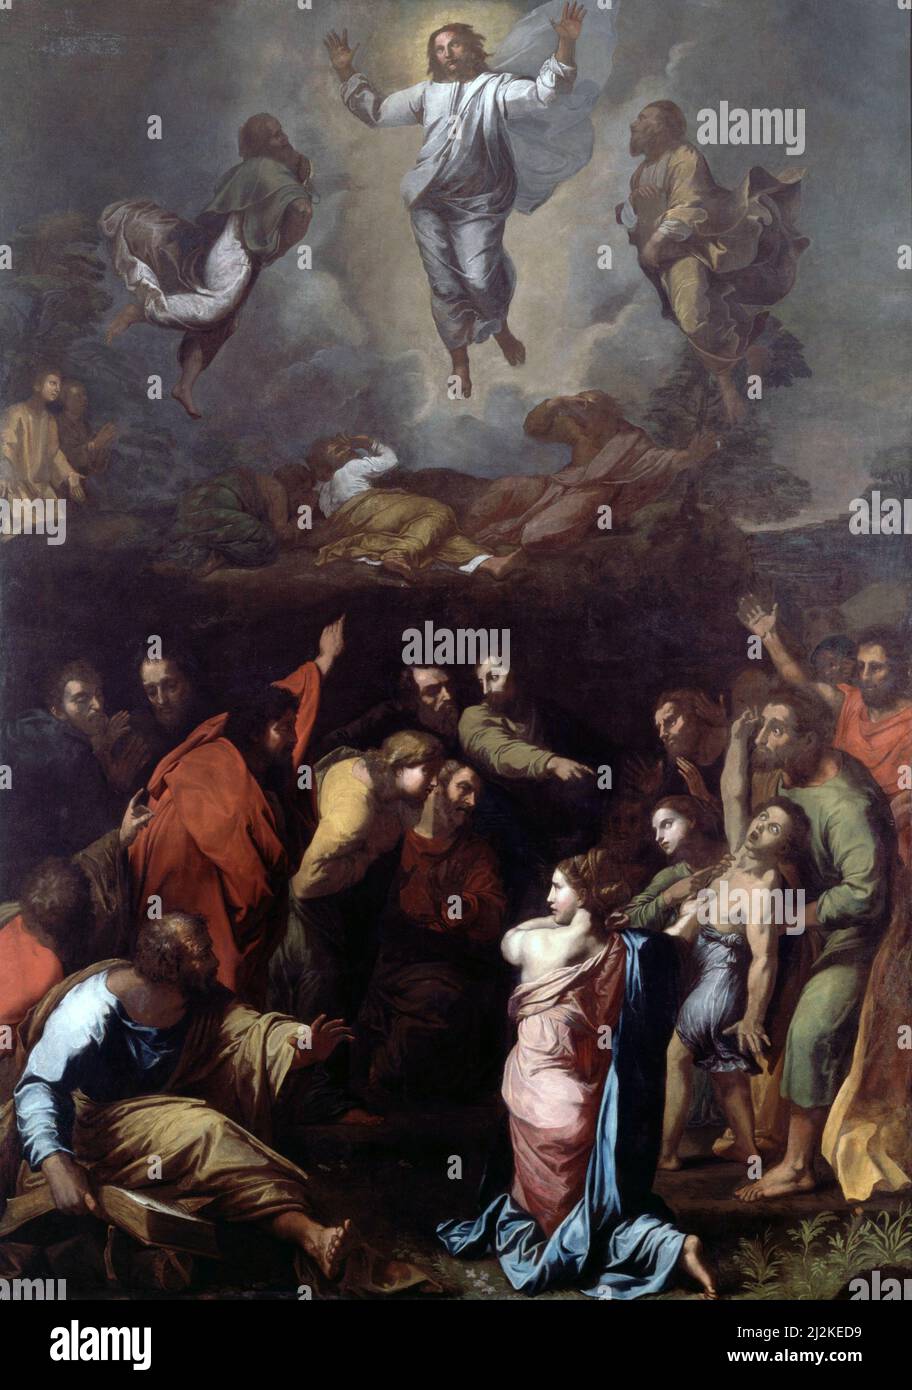 Antike Kunst des italienischen Künstlers Raphael - die Verklärung. Kunst der Hochrenaissance von Rafaello Sanzio da Urbino 1483 - 1520. Stockfoto